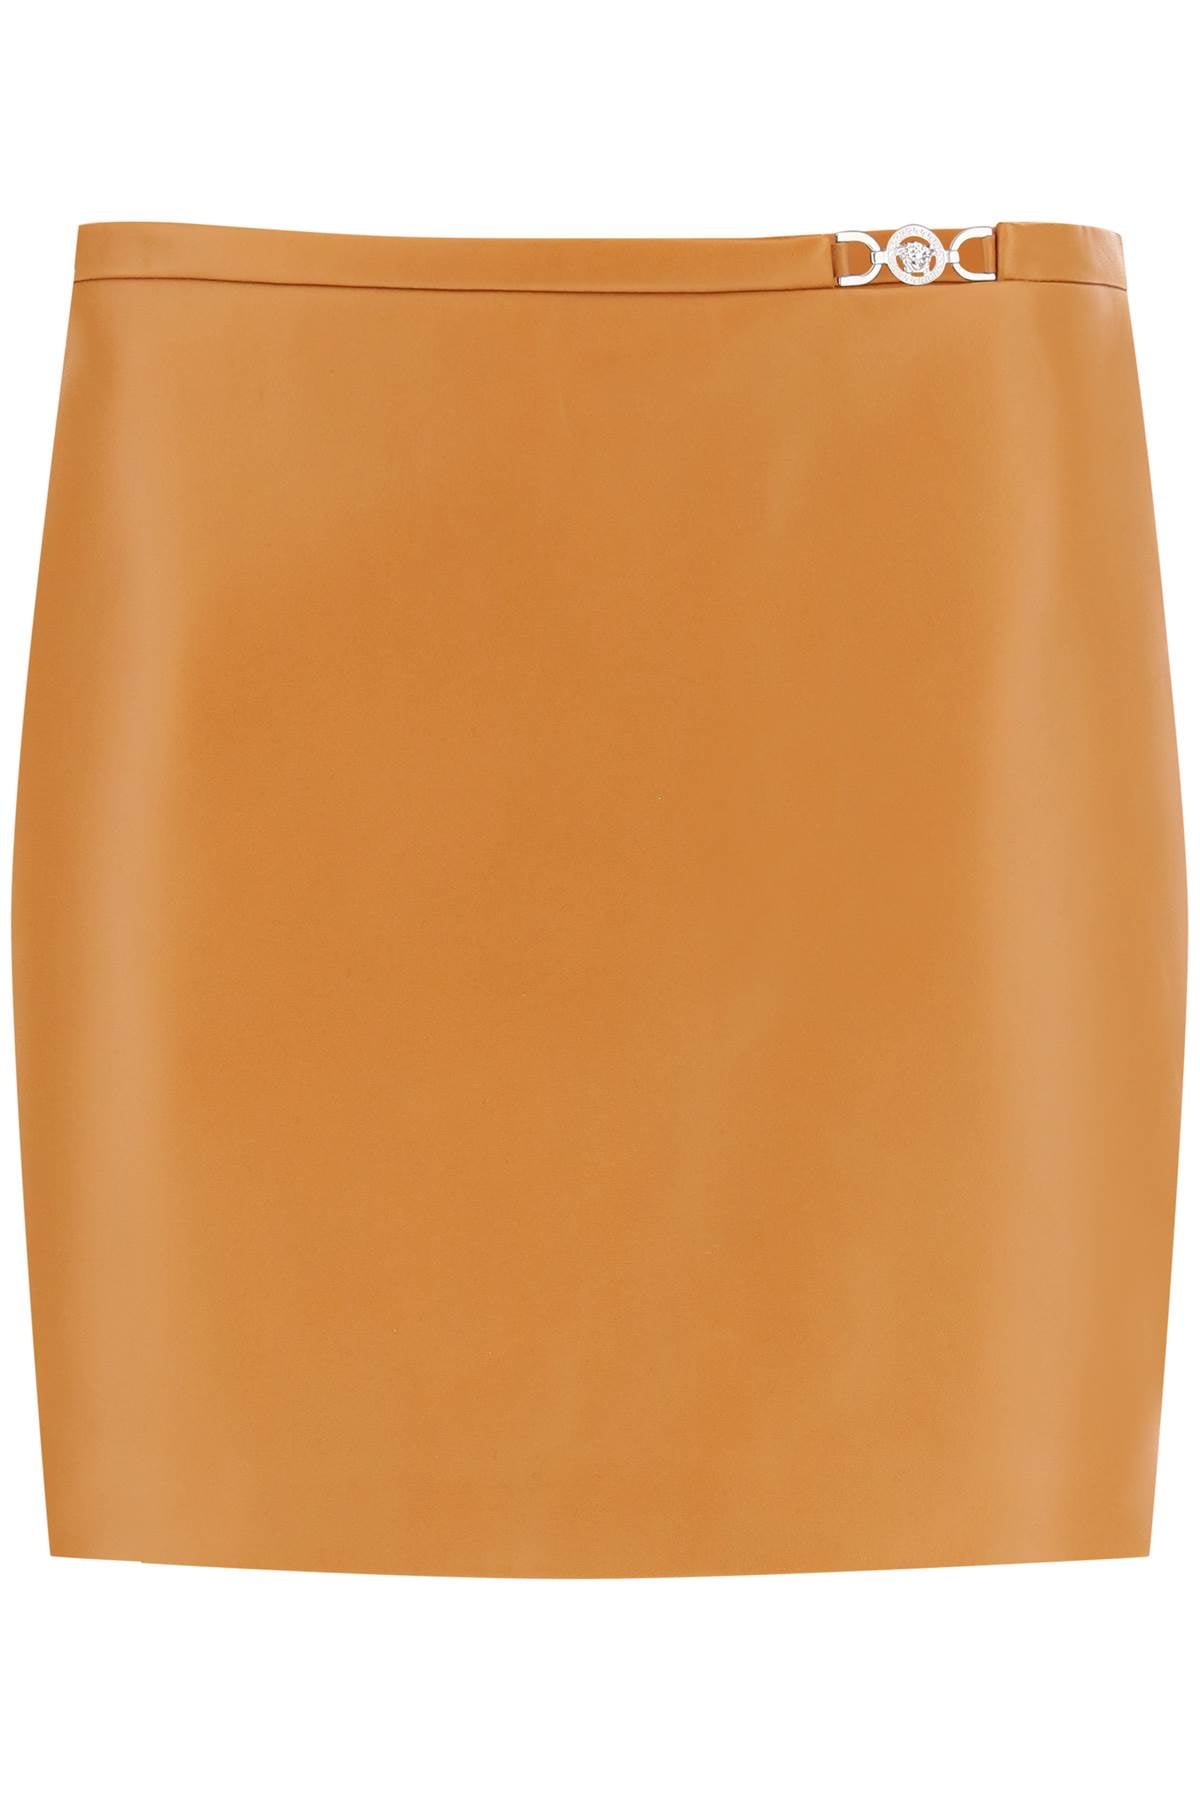 Versace medusa '95 leather mini skirt-0